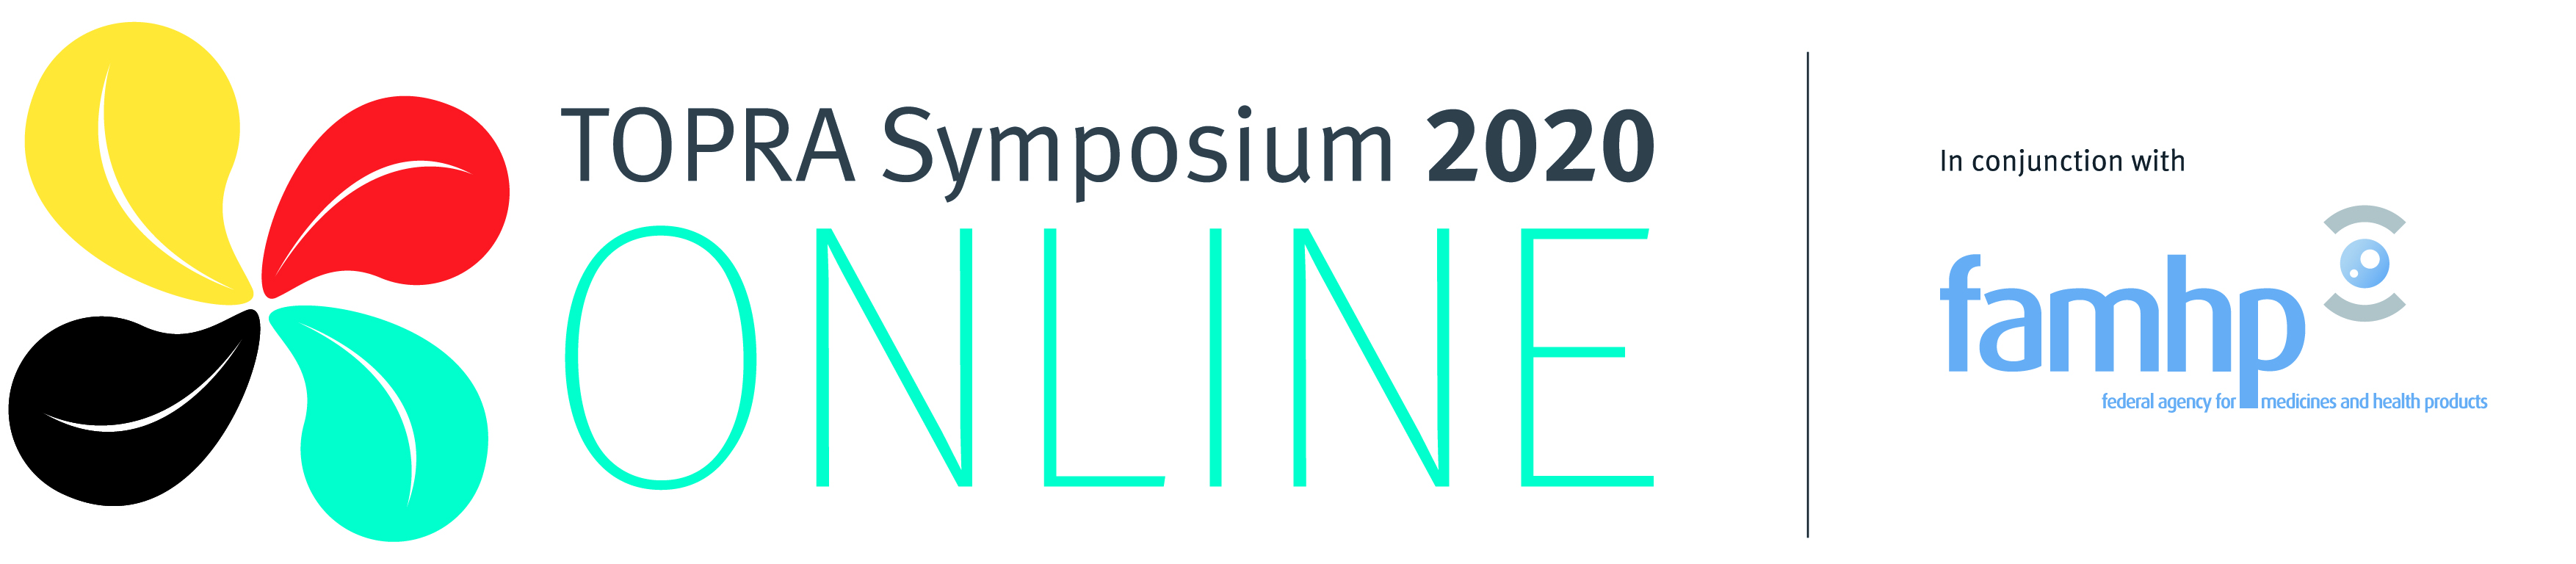 TOPRA Symposium Logo 2020